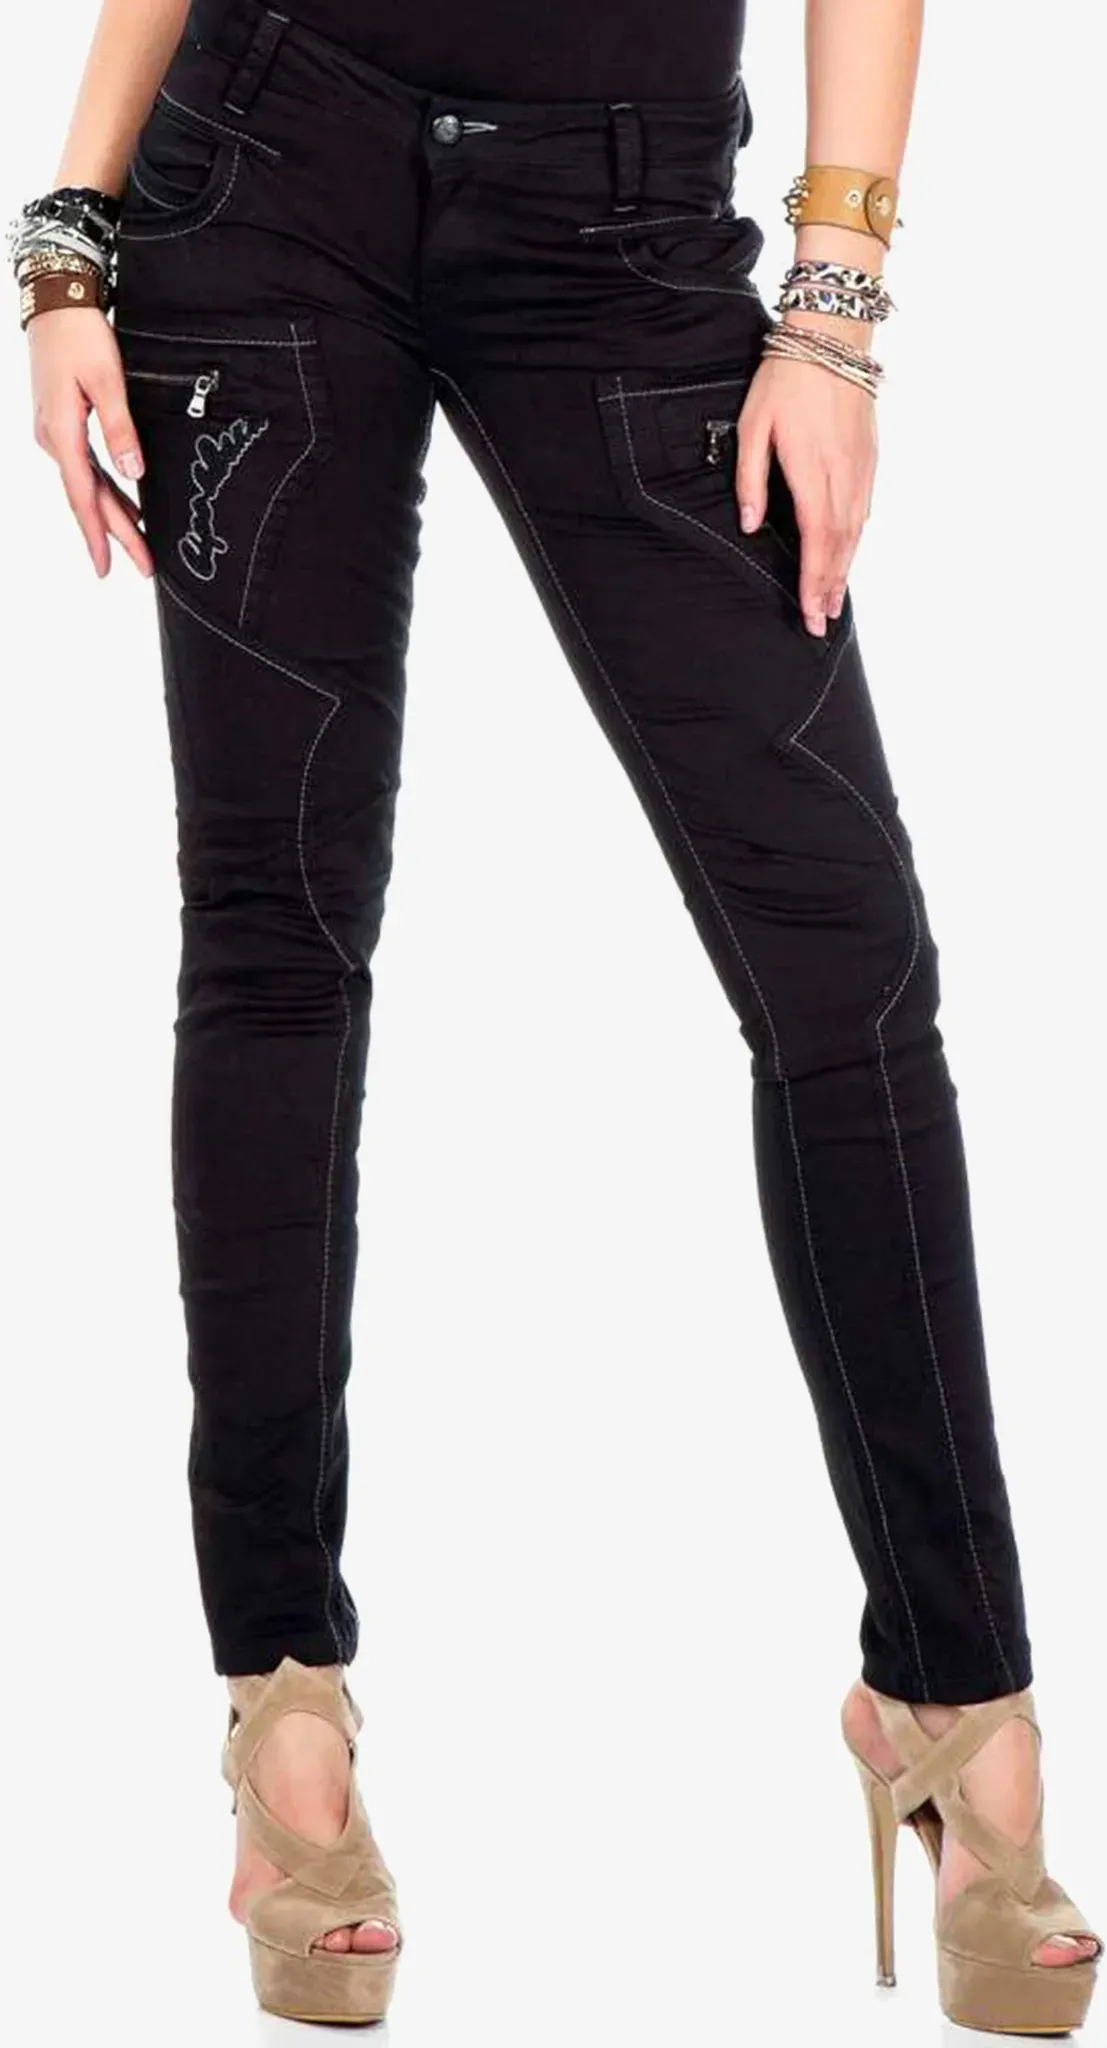 Slim-fit-Jeans CIPO & BAXX Gr. 27, Länge 34, schwarz Damen Jeans Röhrenjeans mit ausgefallenen Ziernähten